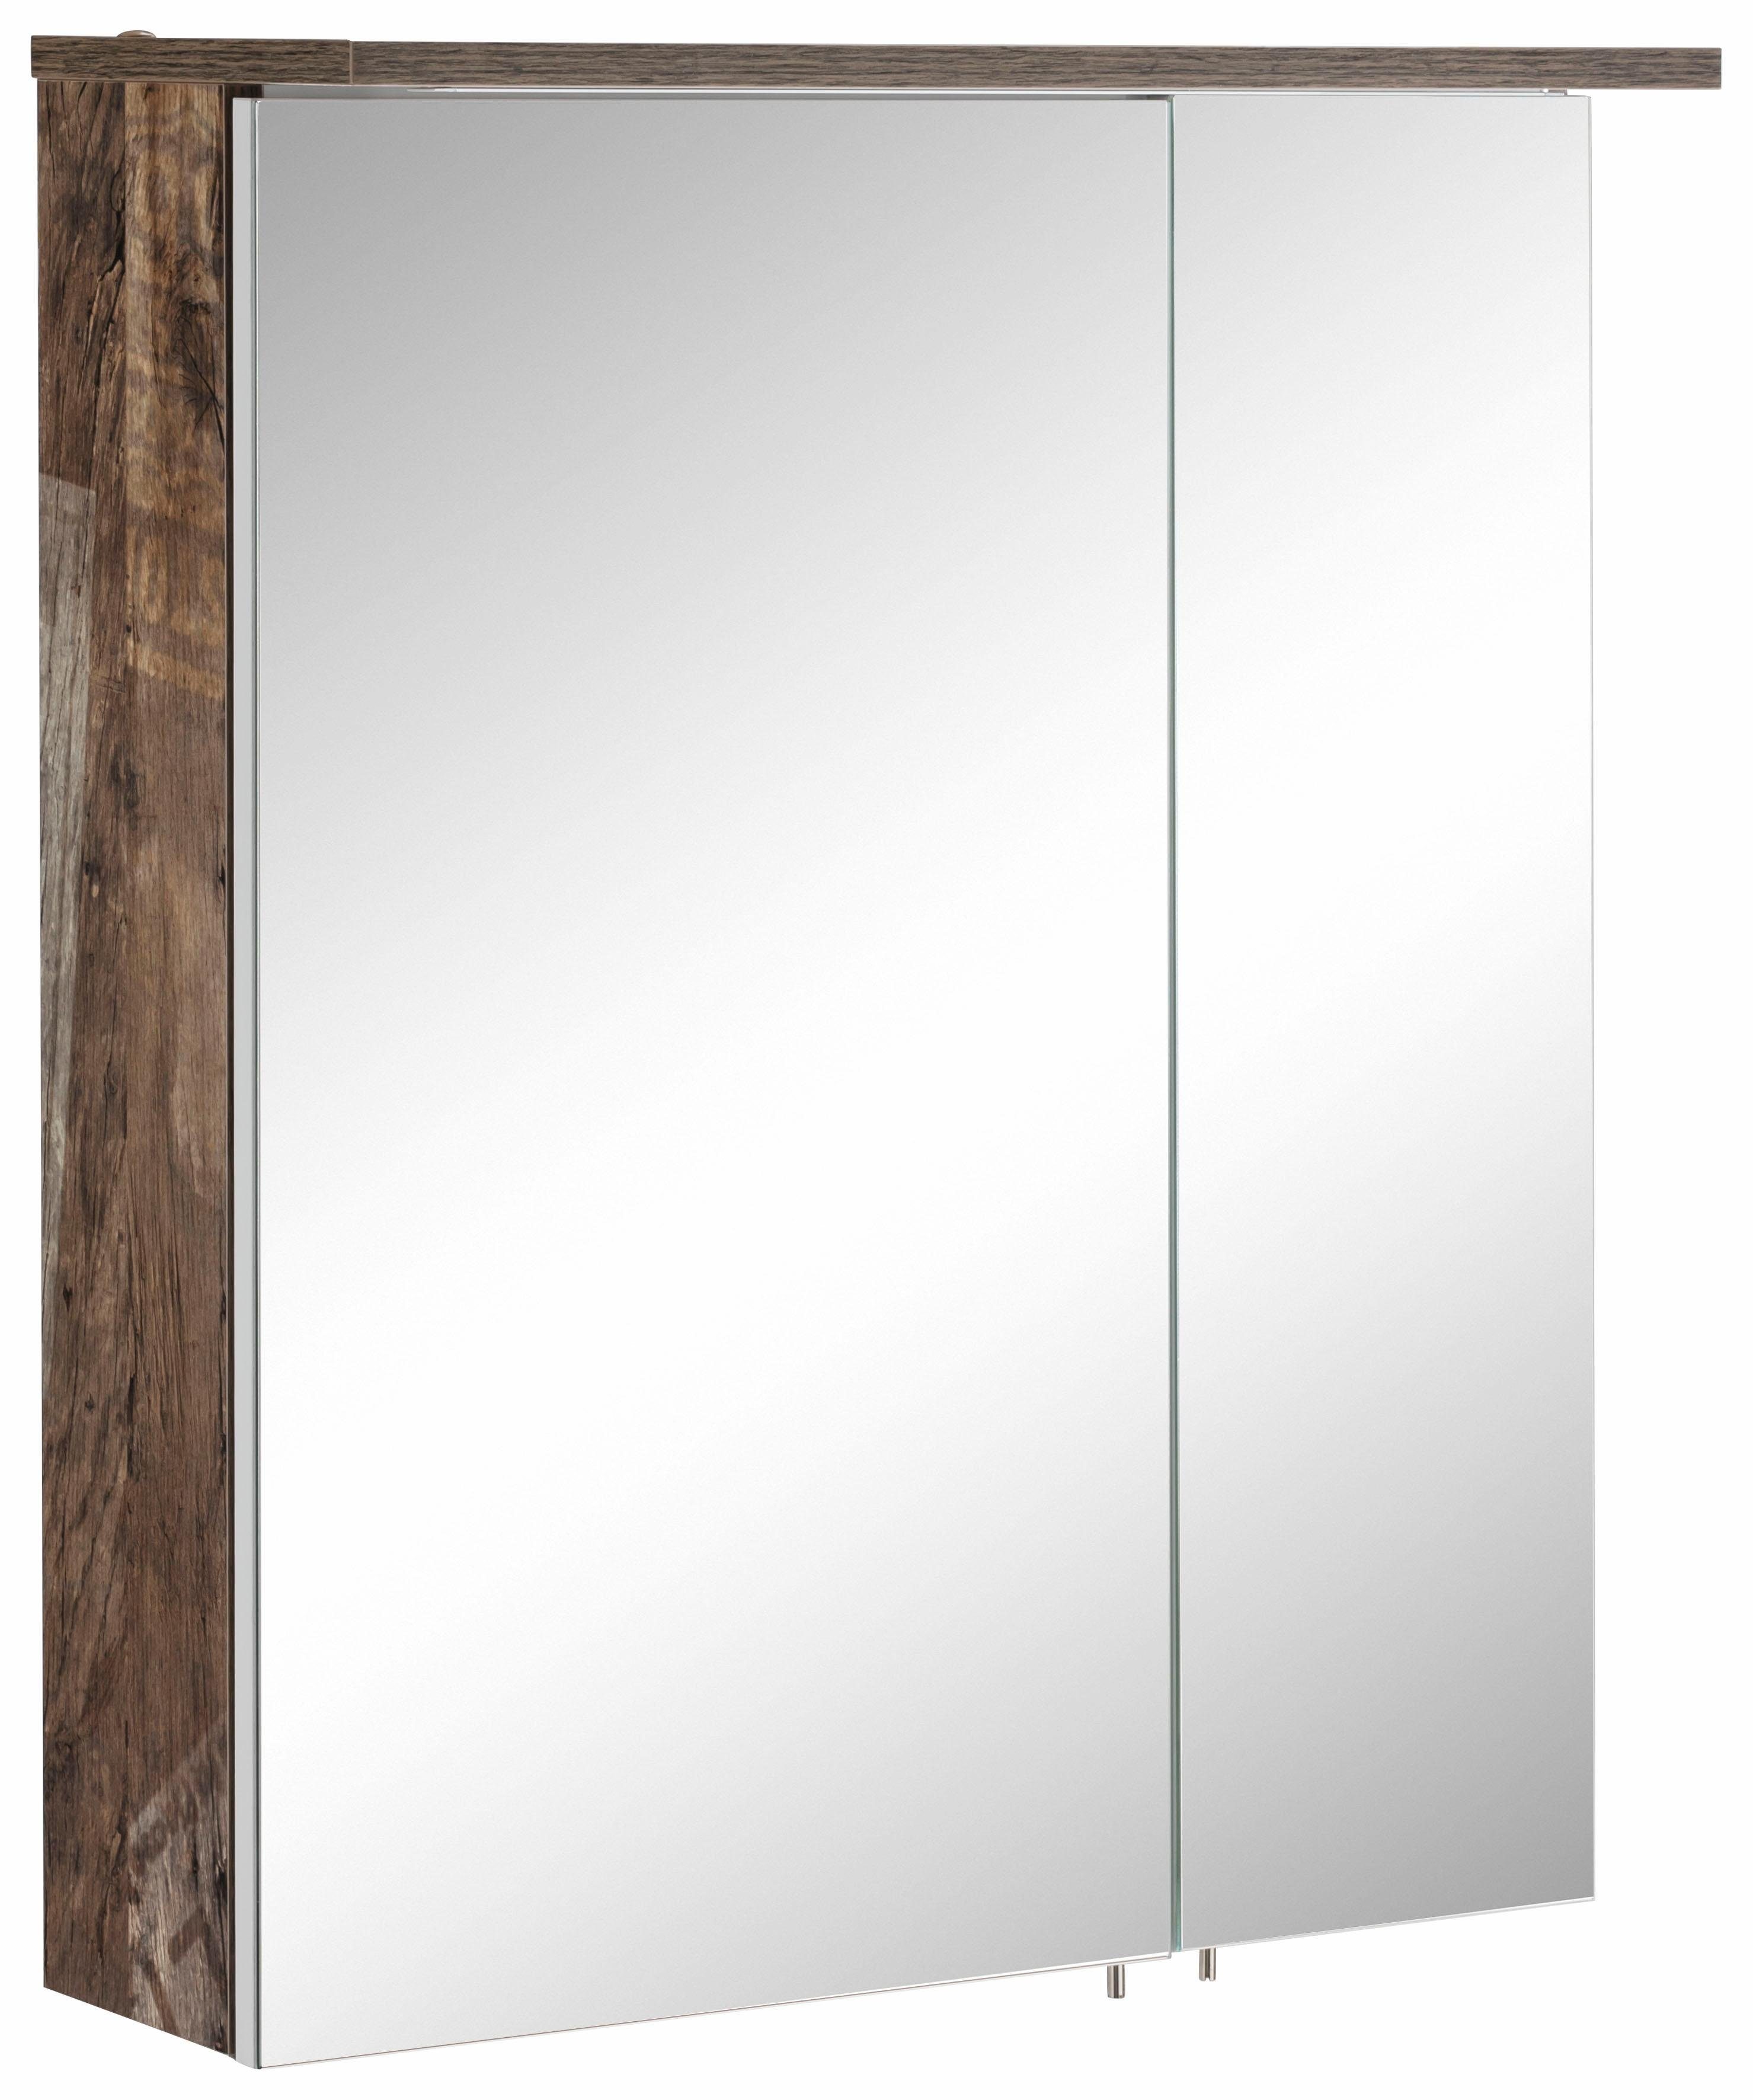 Schildmeyer Spiegelschrank Profil 16 Breite 60 cm, 2-türig, LED-Beleuchtung, Schalter-/Steckdosenbox panama eichefb. | Panama eichefarben matt